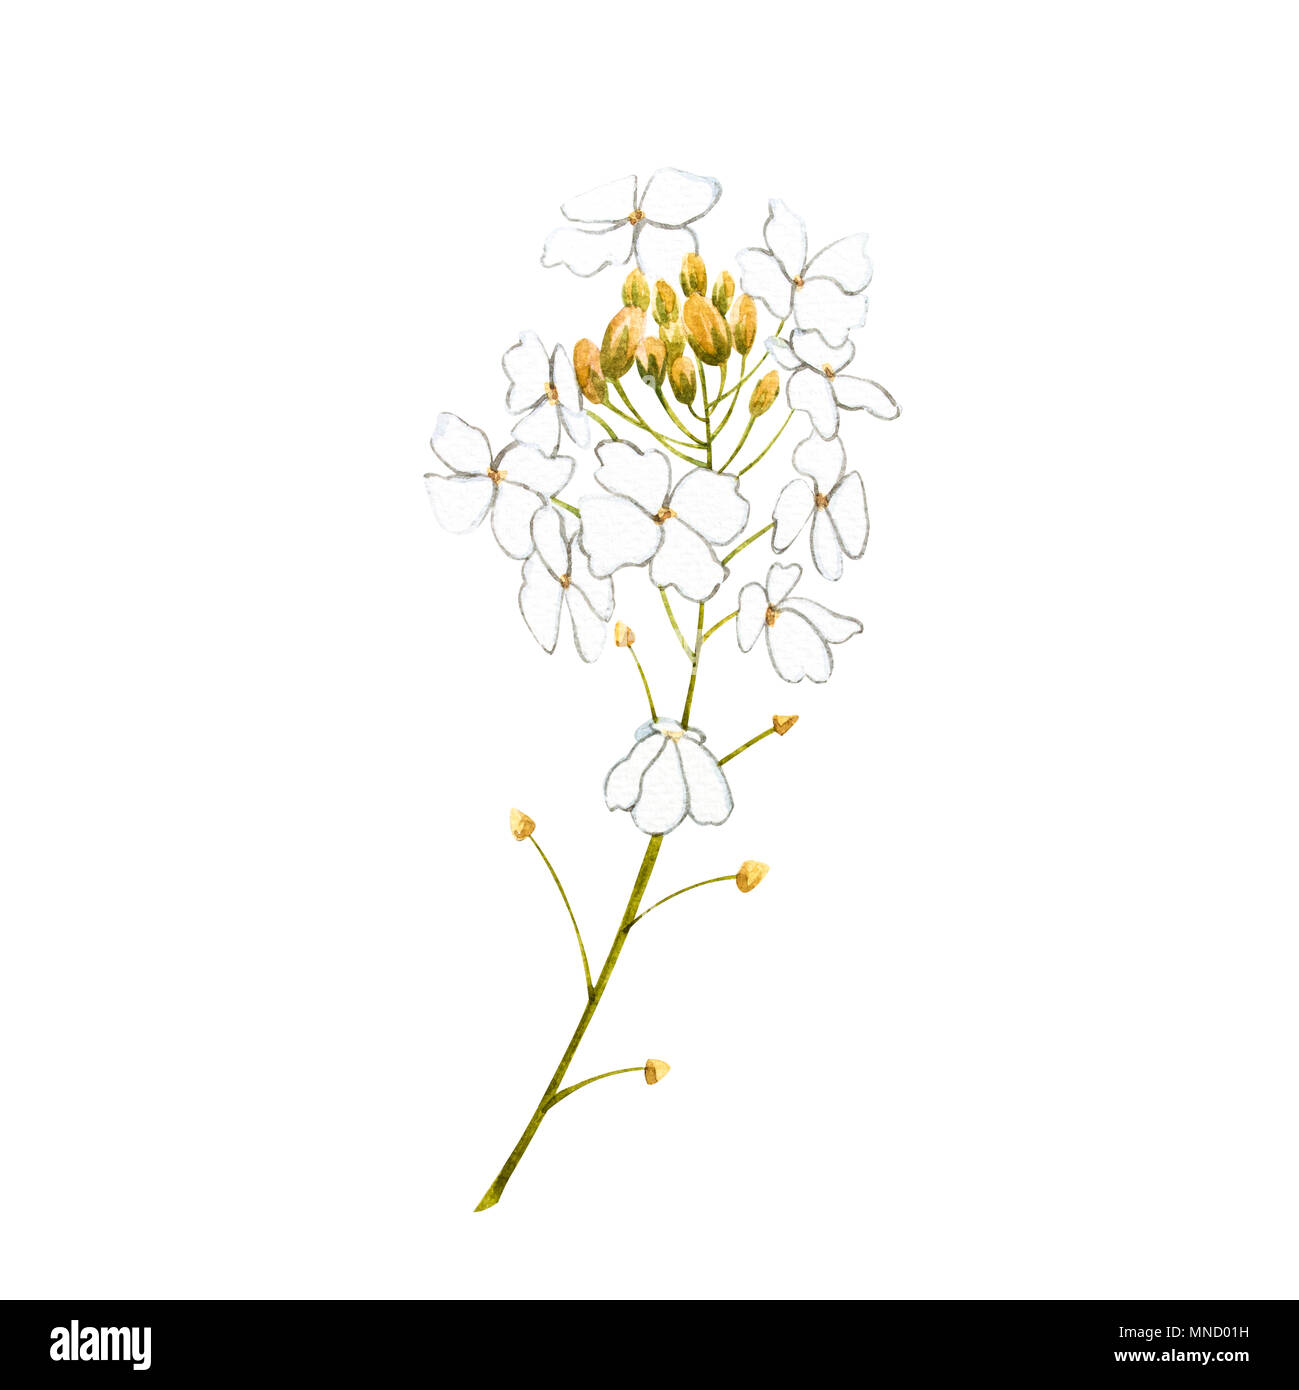 Watercolor horseradish flowers. Botanical illustration of organic, eco plant. Isolated on white background. Illustration For Food Design. Stock Photo